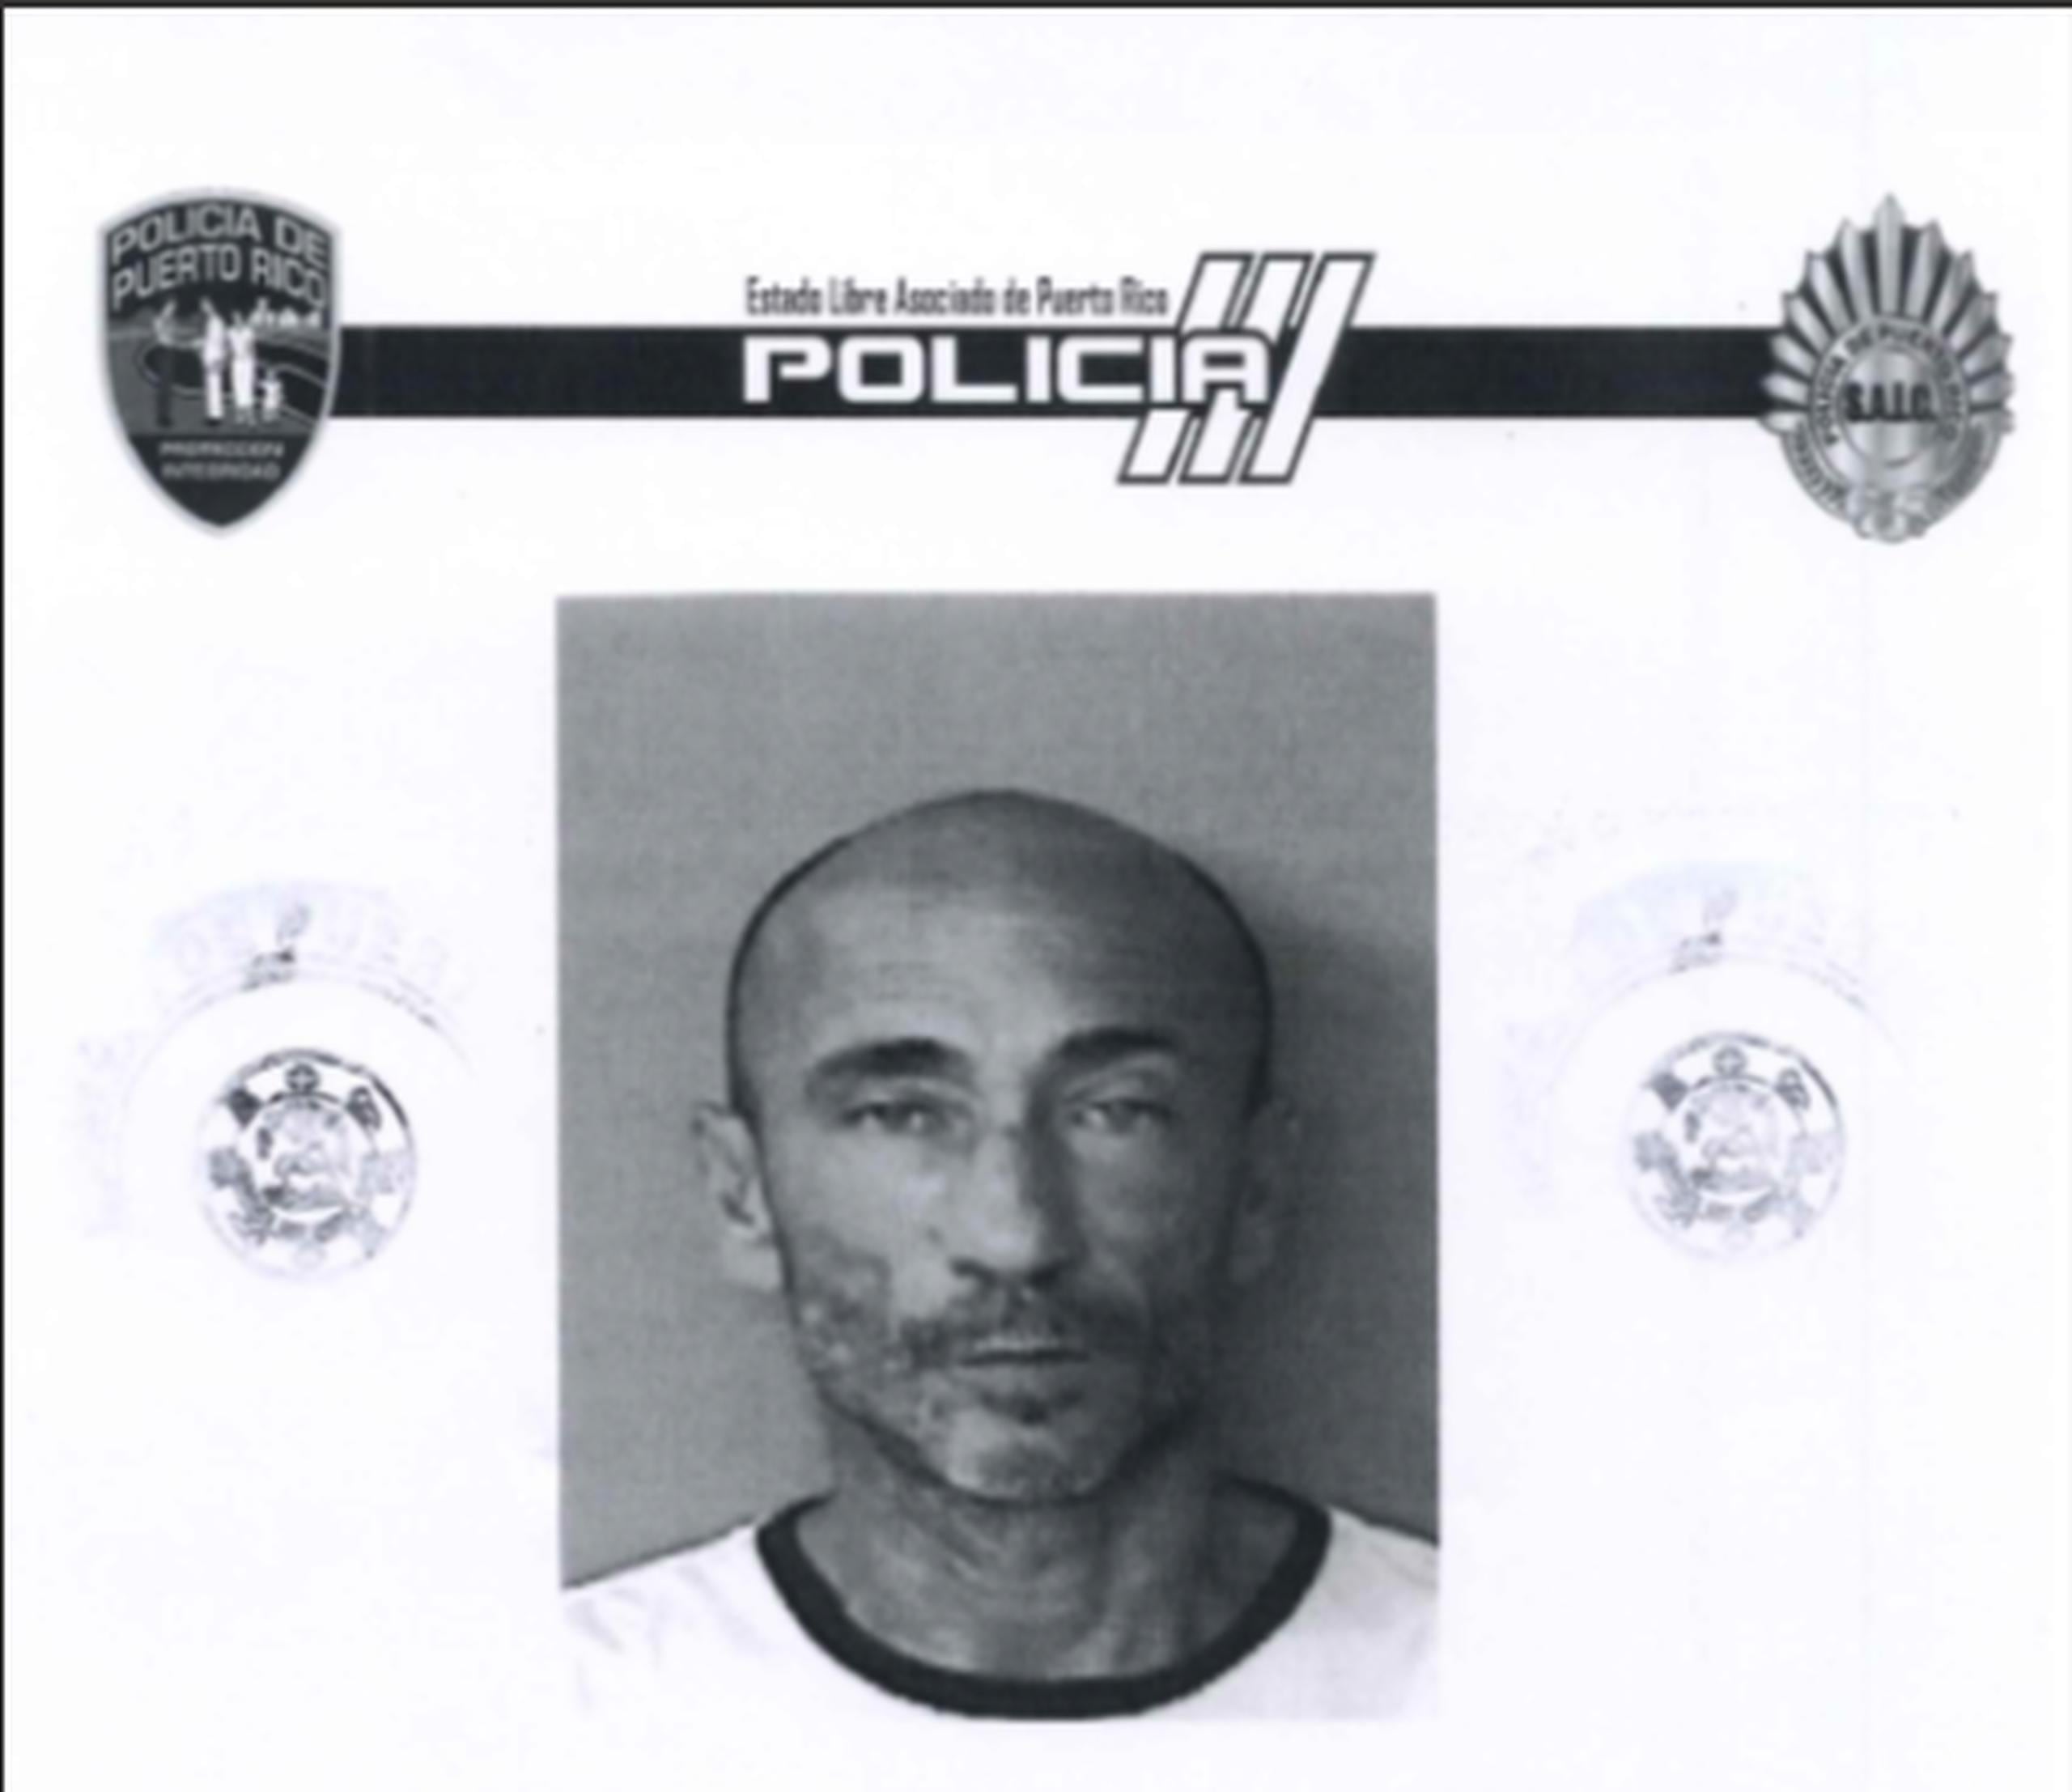 Jason Deiley Rivera, confinado encontrado muerto en Cárcel de Bayamón